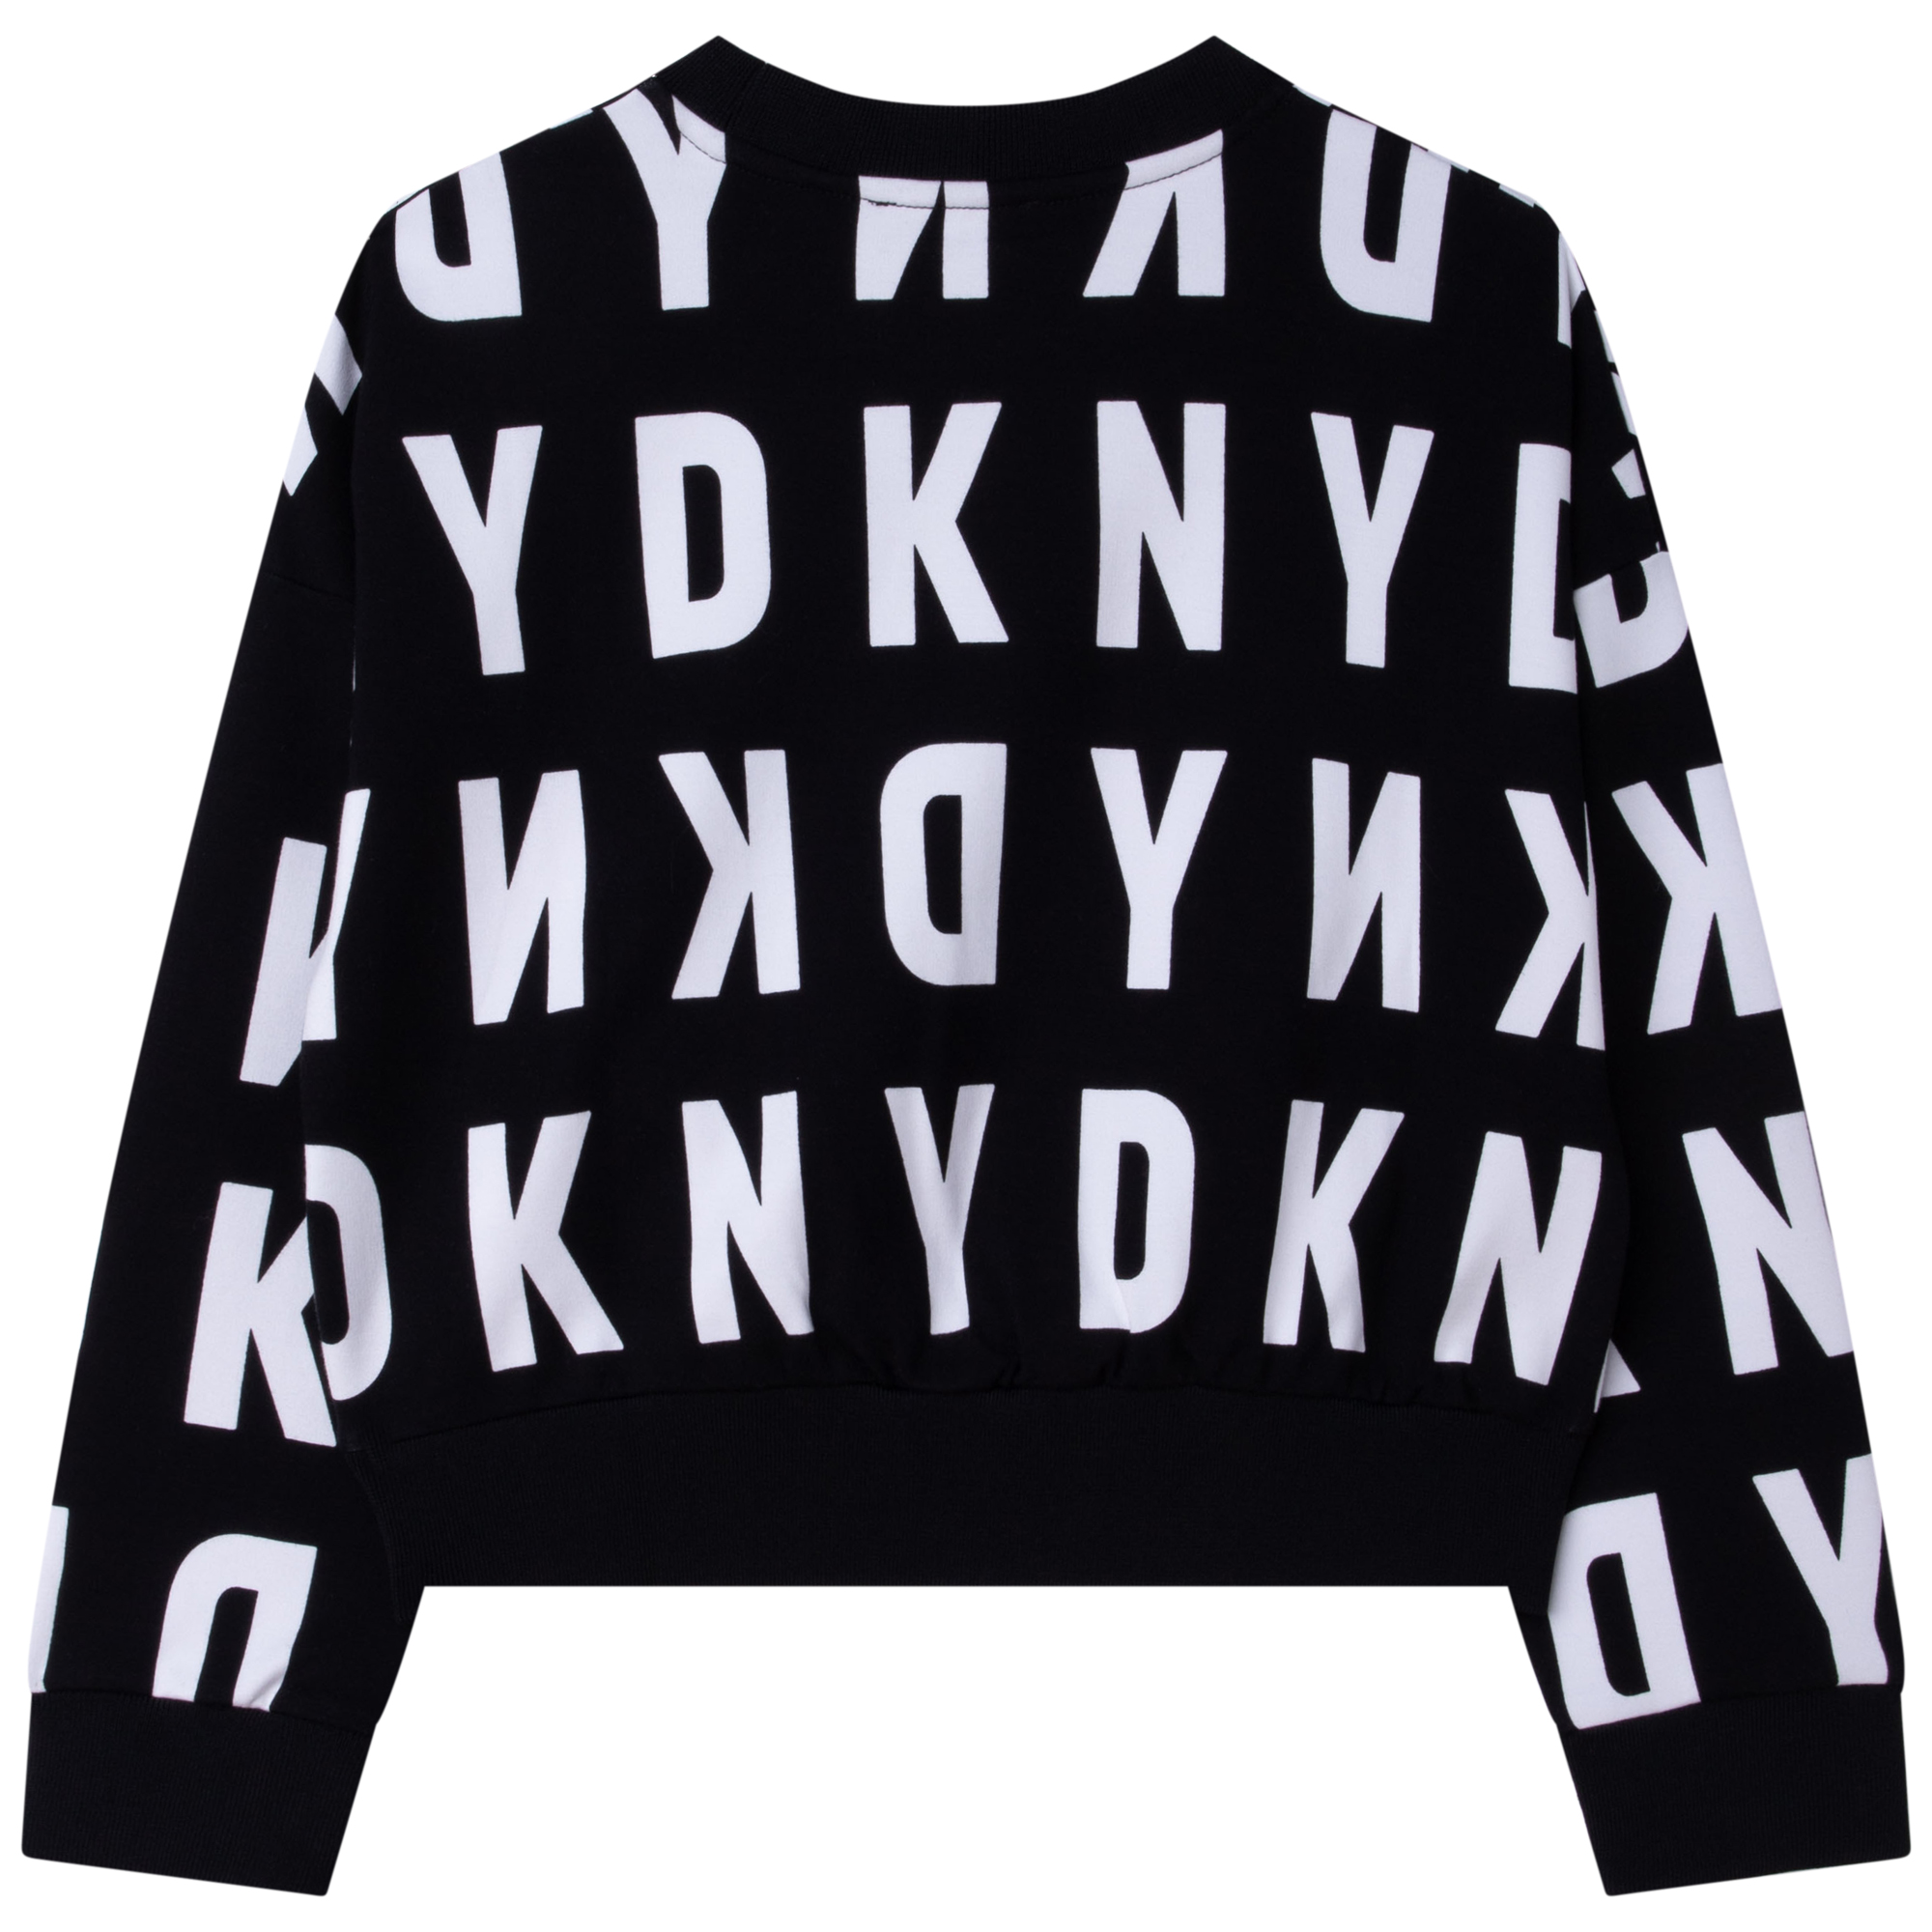 Elastische sweater met print DKNY Voor